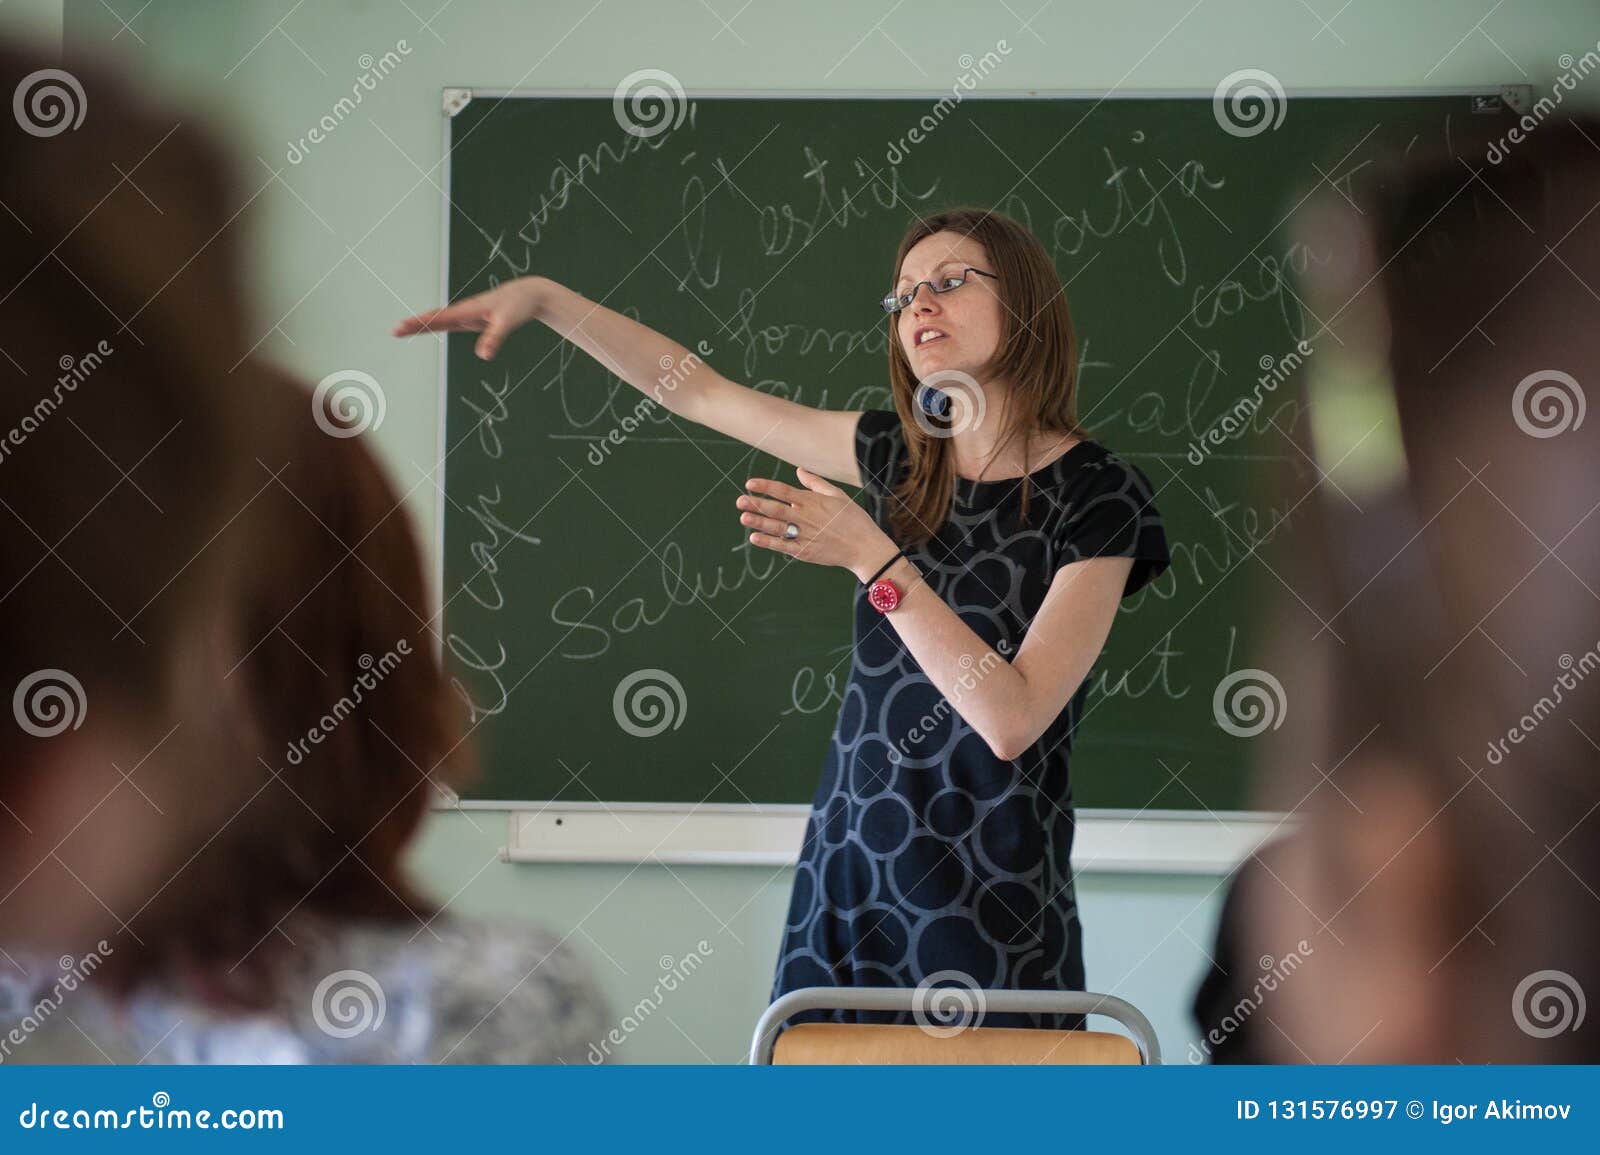 Грязные разговоры училки. Учитель говорит тихо фото. Картинка молодой учитель со спины.